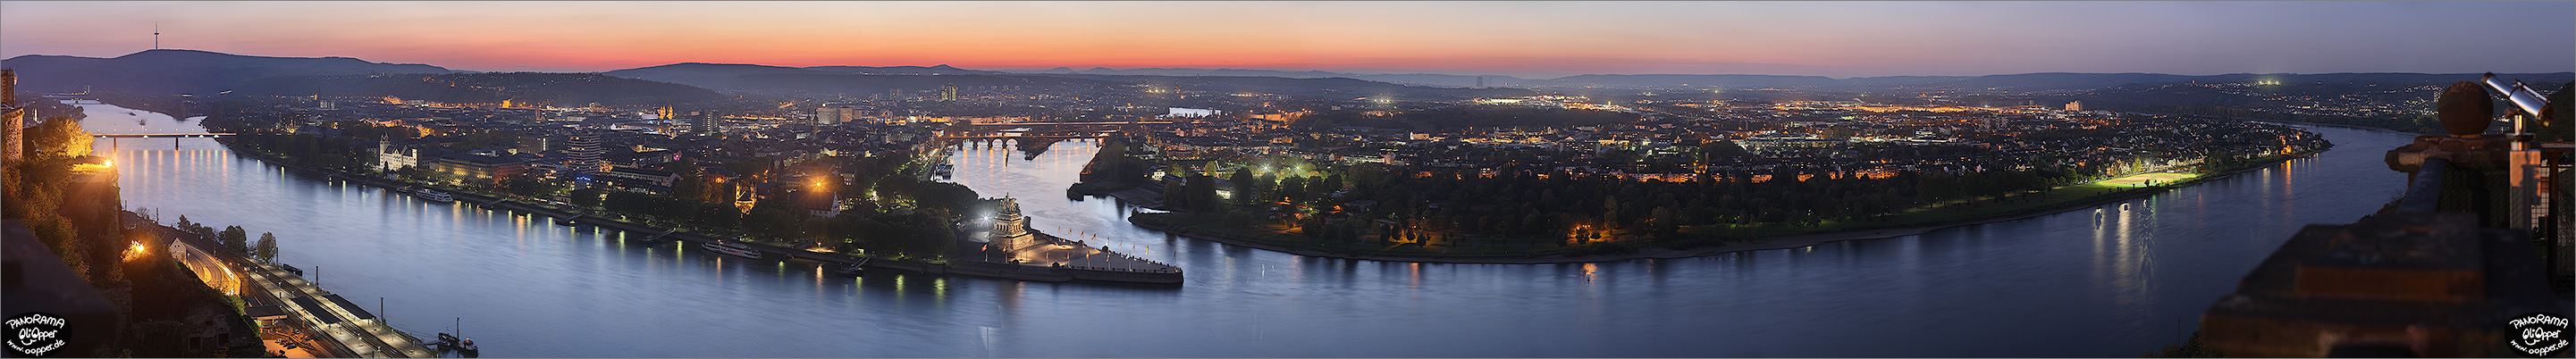 Panorama Bilder Koblenz Deutsches Eck - Blick von der Festung Ehrenbreitstein aus auf das abendliche Deutsche Eck - p001 - (c) by Oliver Opper